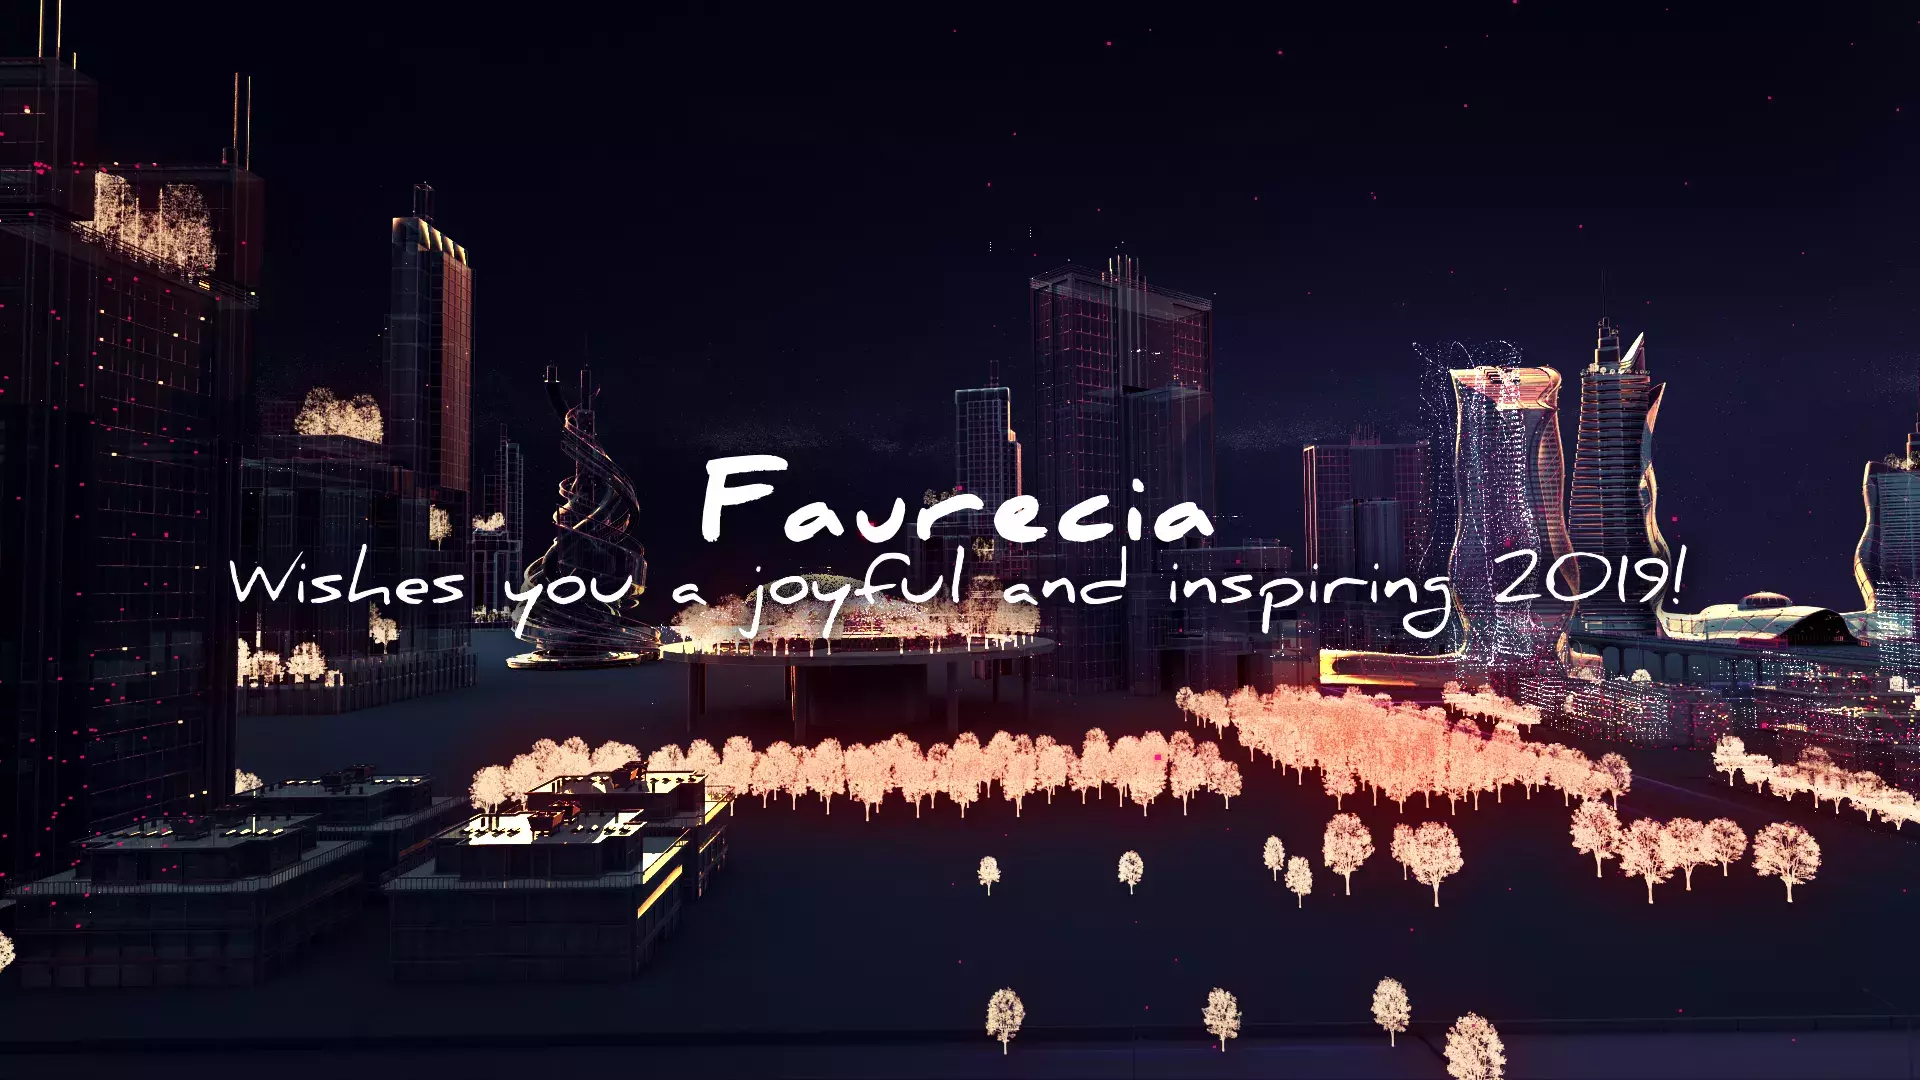 Faurecia wishes you a joyful and inspiring 2019